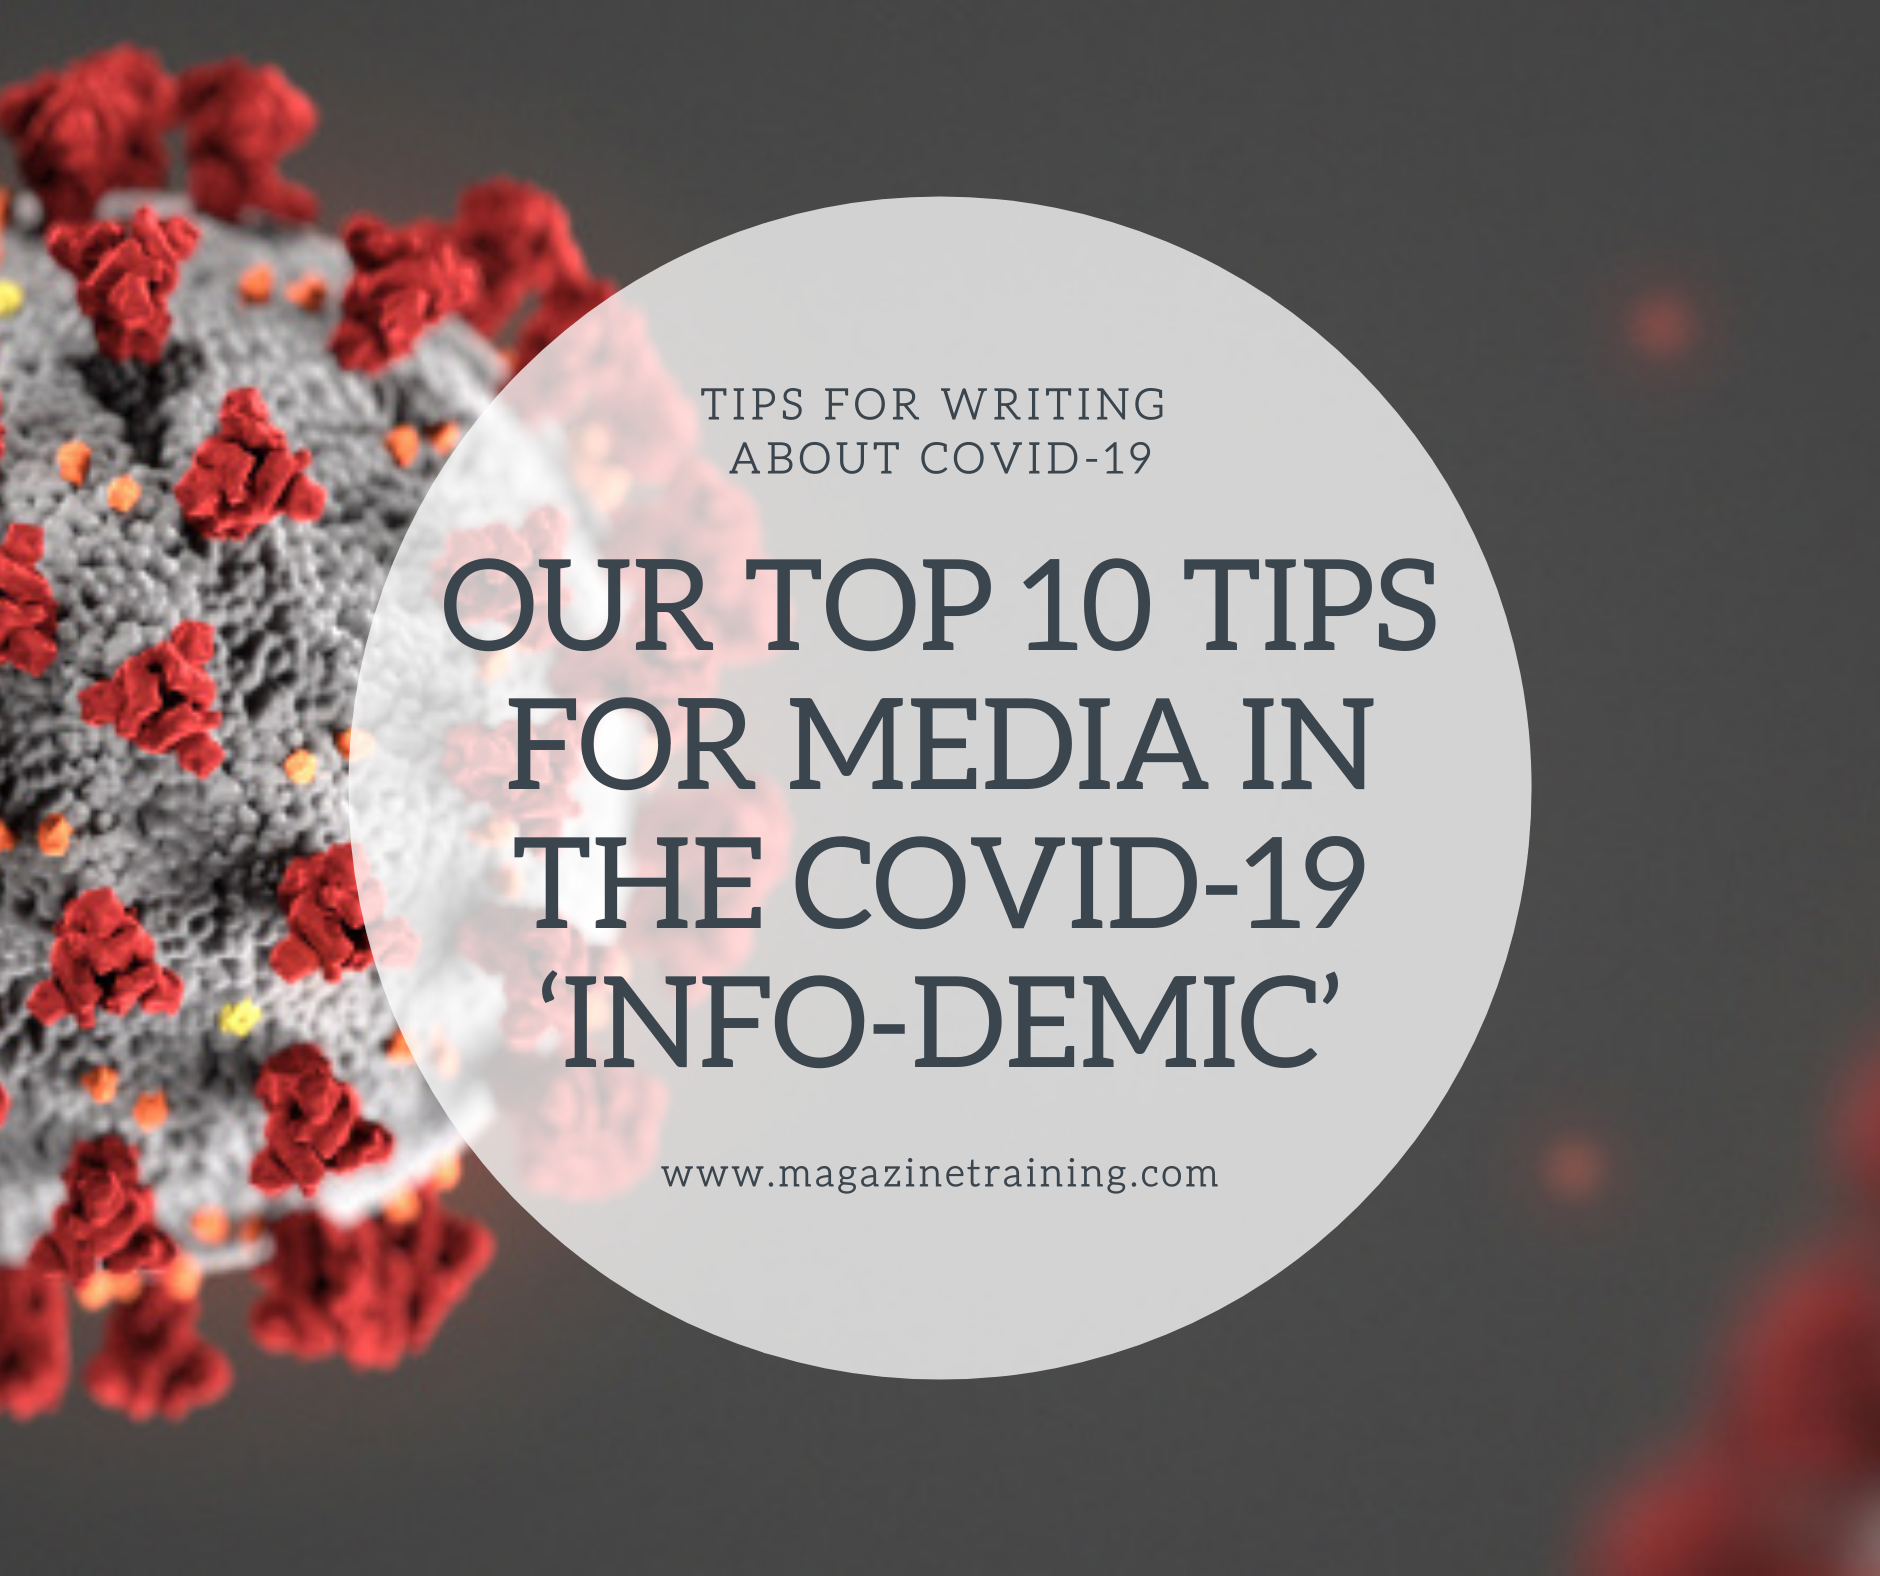 tips for media in infodemic